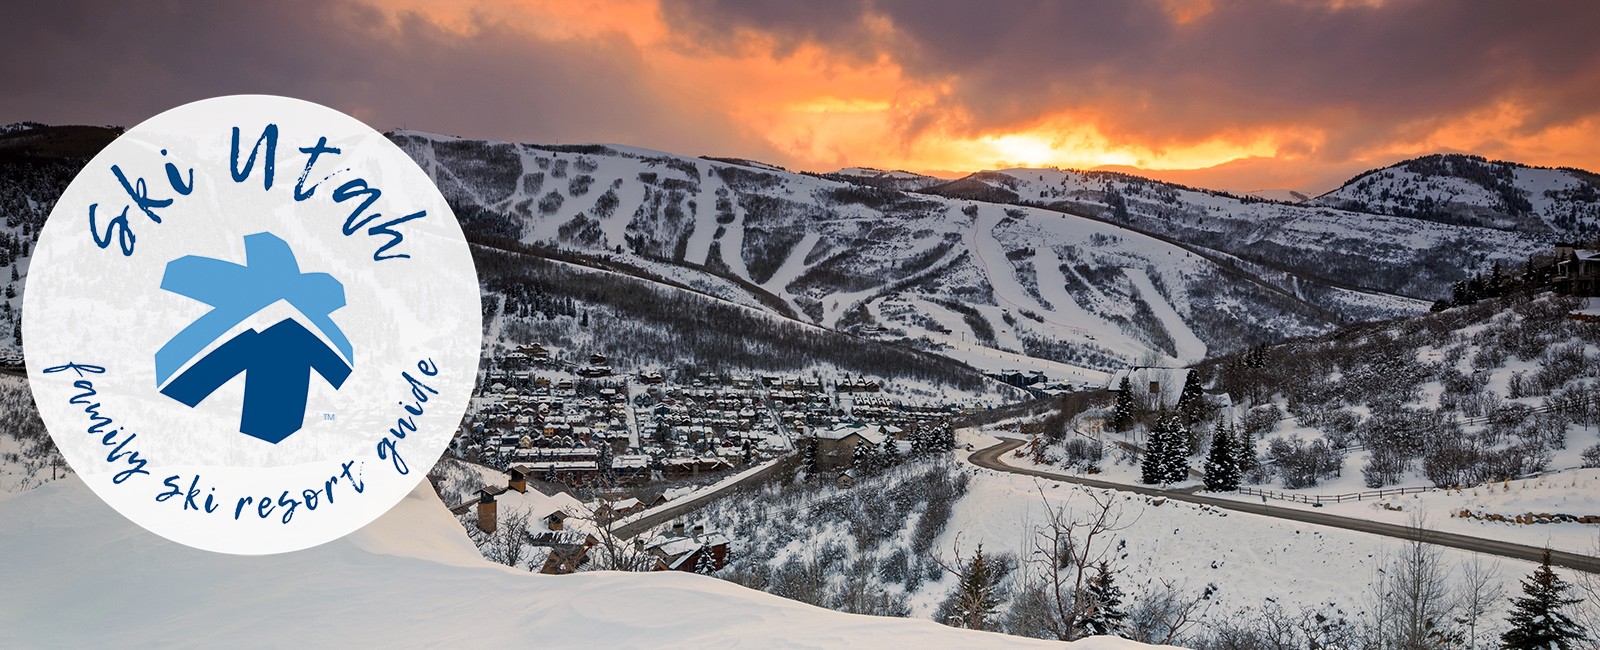 Family Ski Resort Guide | Park City Mountain Resort